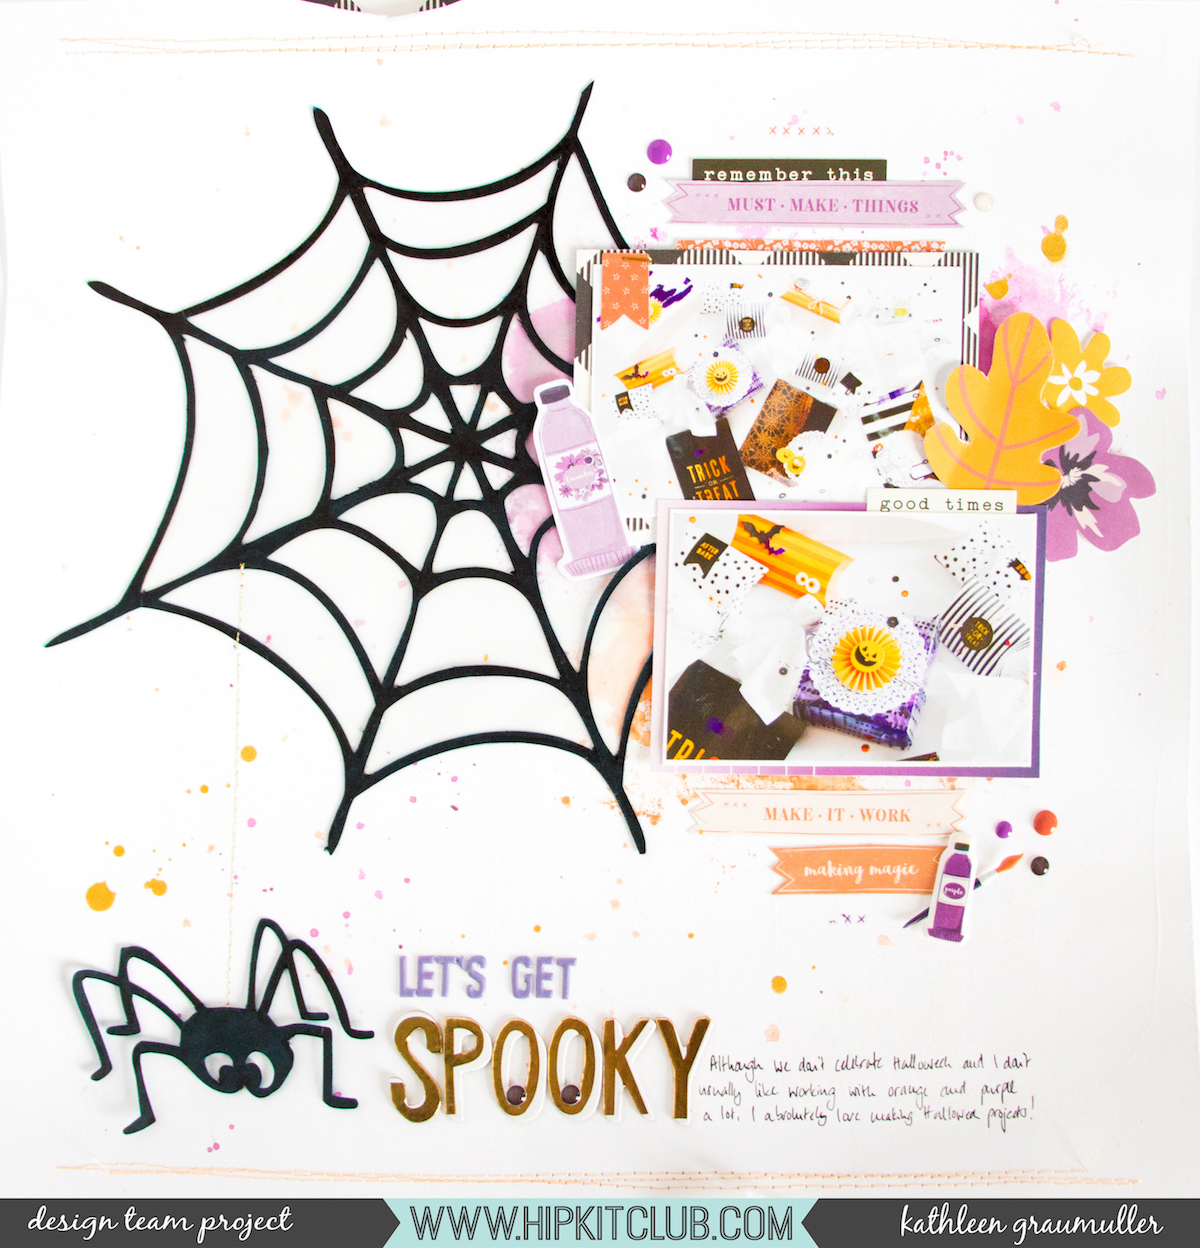 Let's Get Spooky by ScatteredConfetti. // #scrapbooking #hipkitclub #pinkpaislee #cratepaper